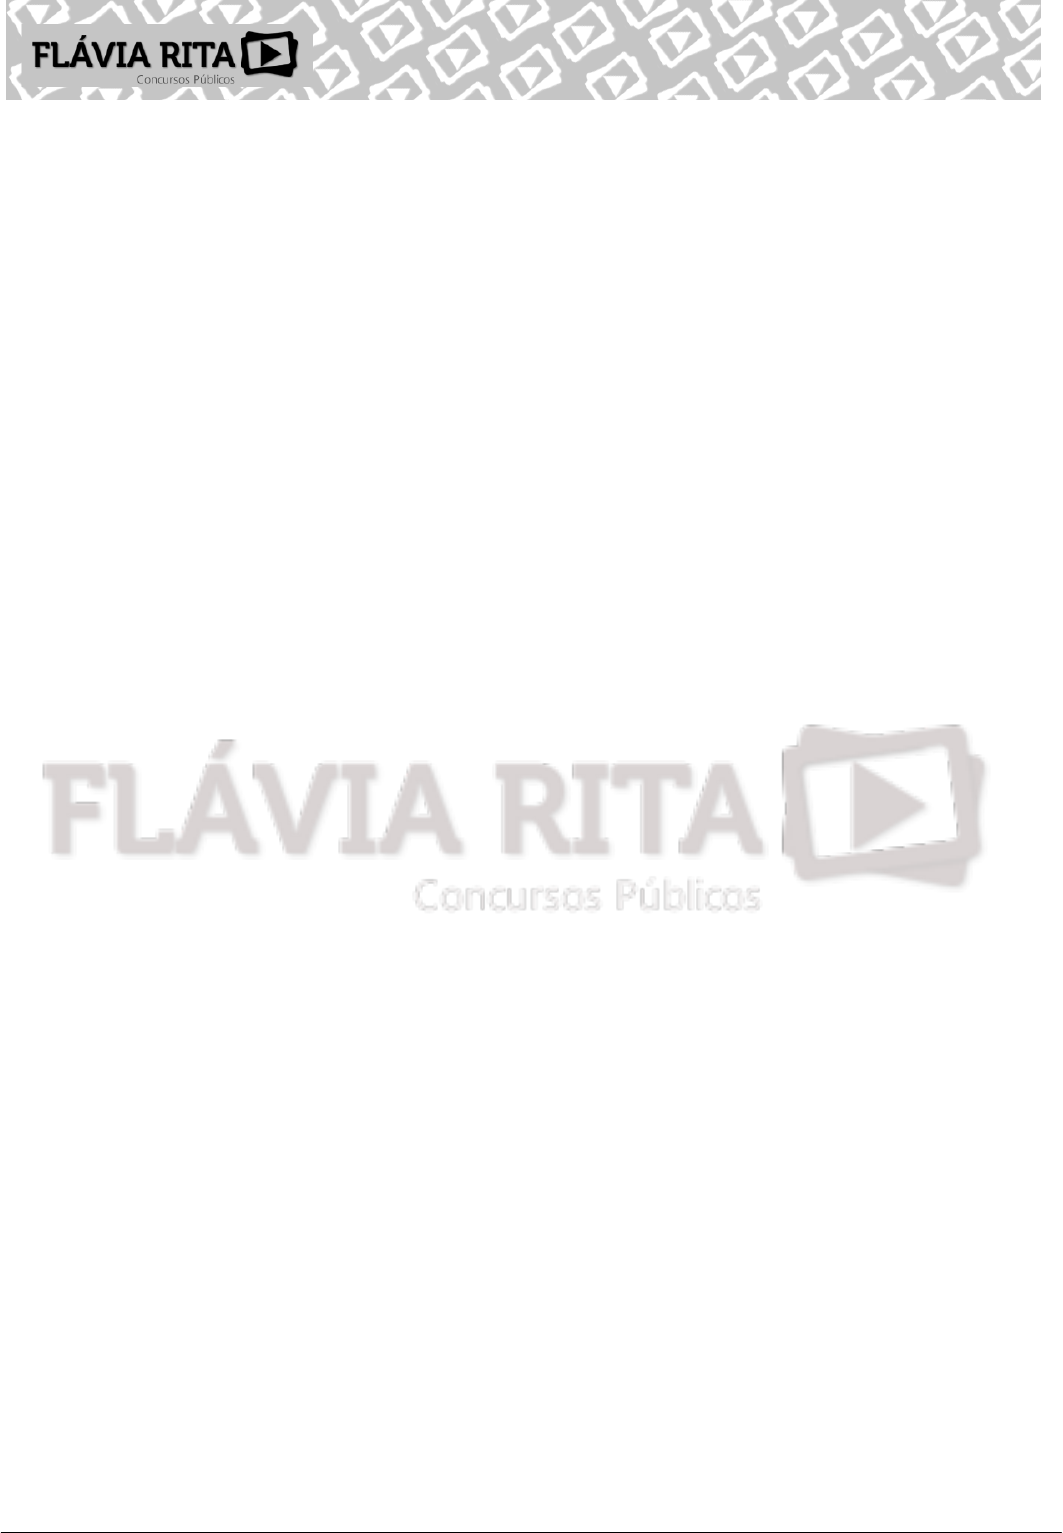 Pronome Relativo - Regras de uso - Blog Flávia Rita